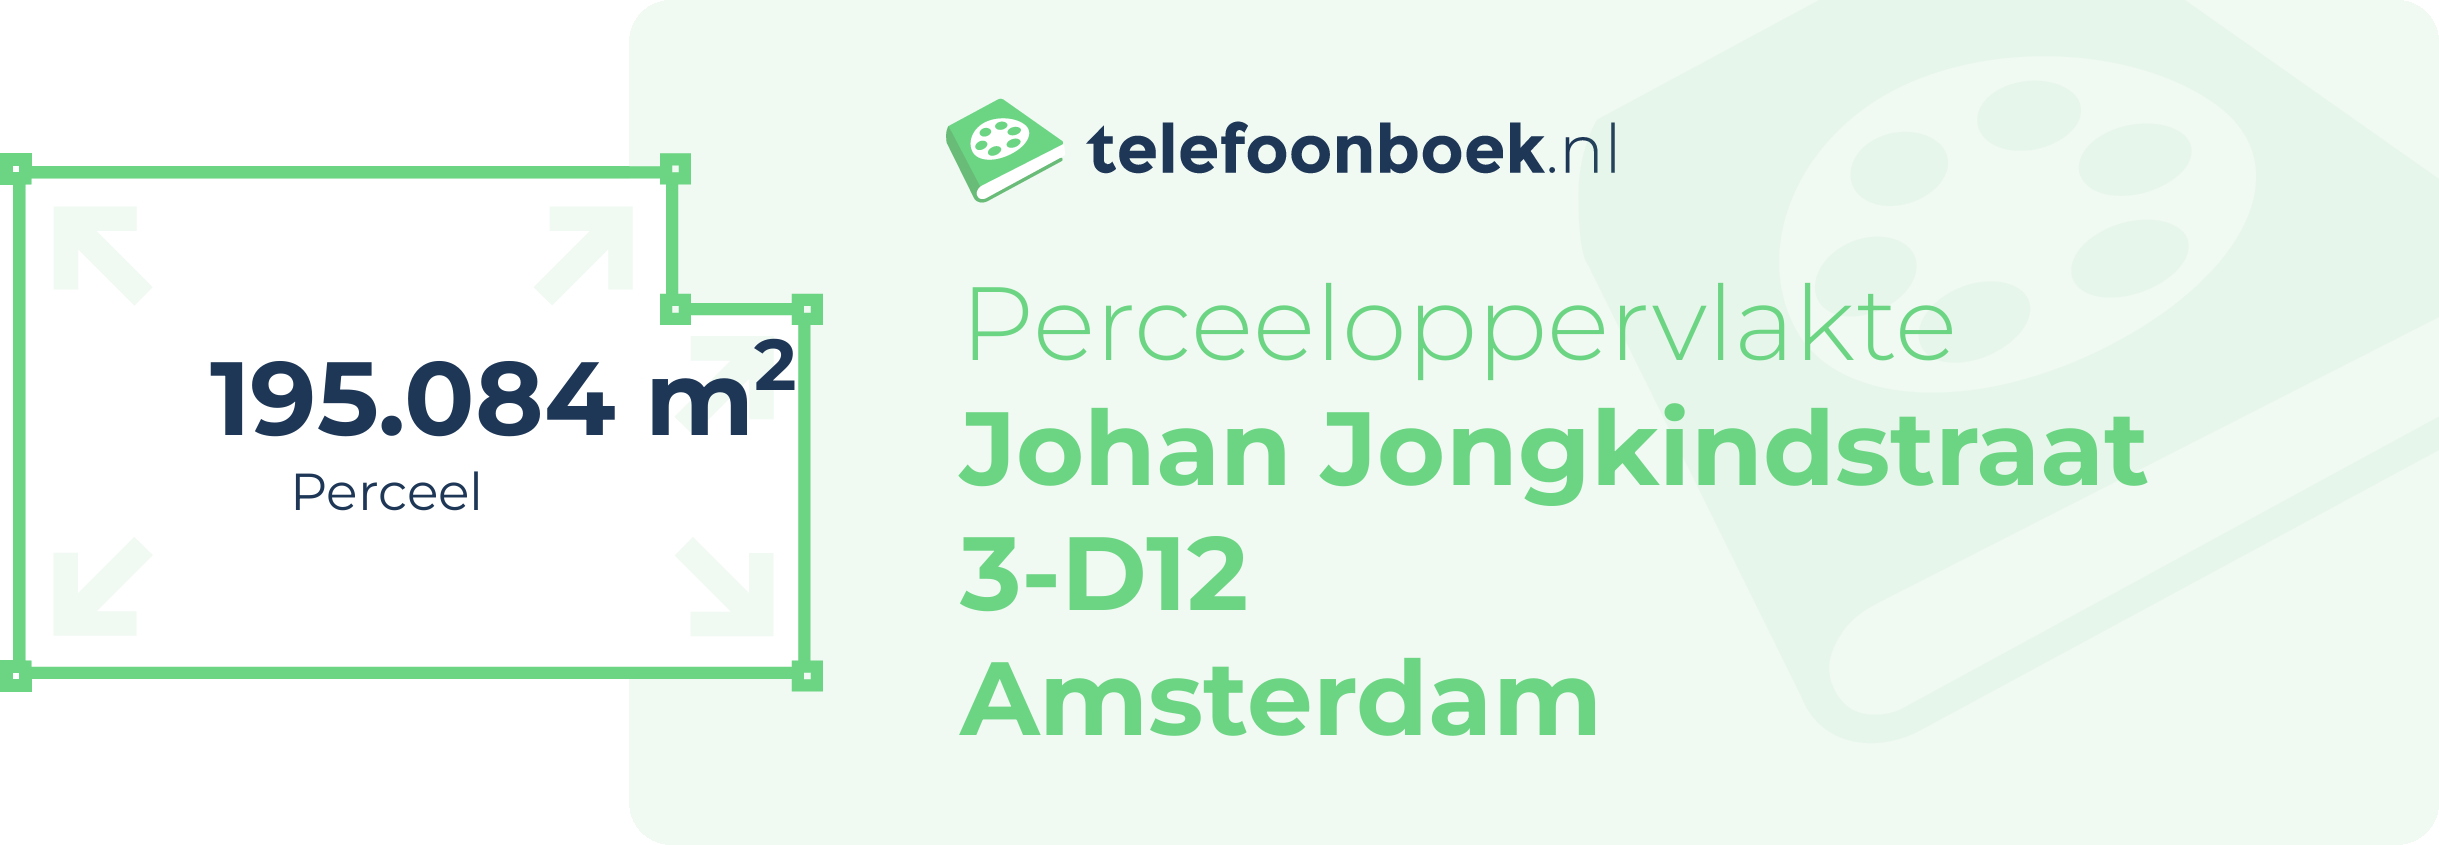 Perceeloppervlakte Johan Jongkindstraat 3-D12 Amsterdam